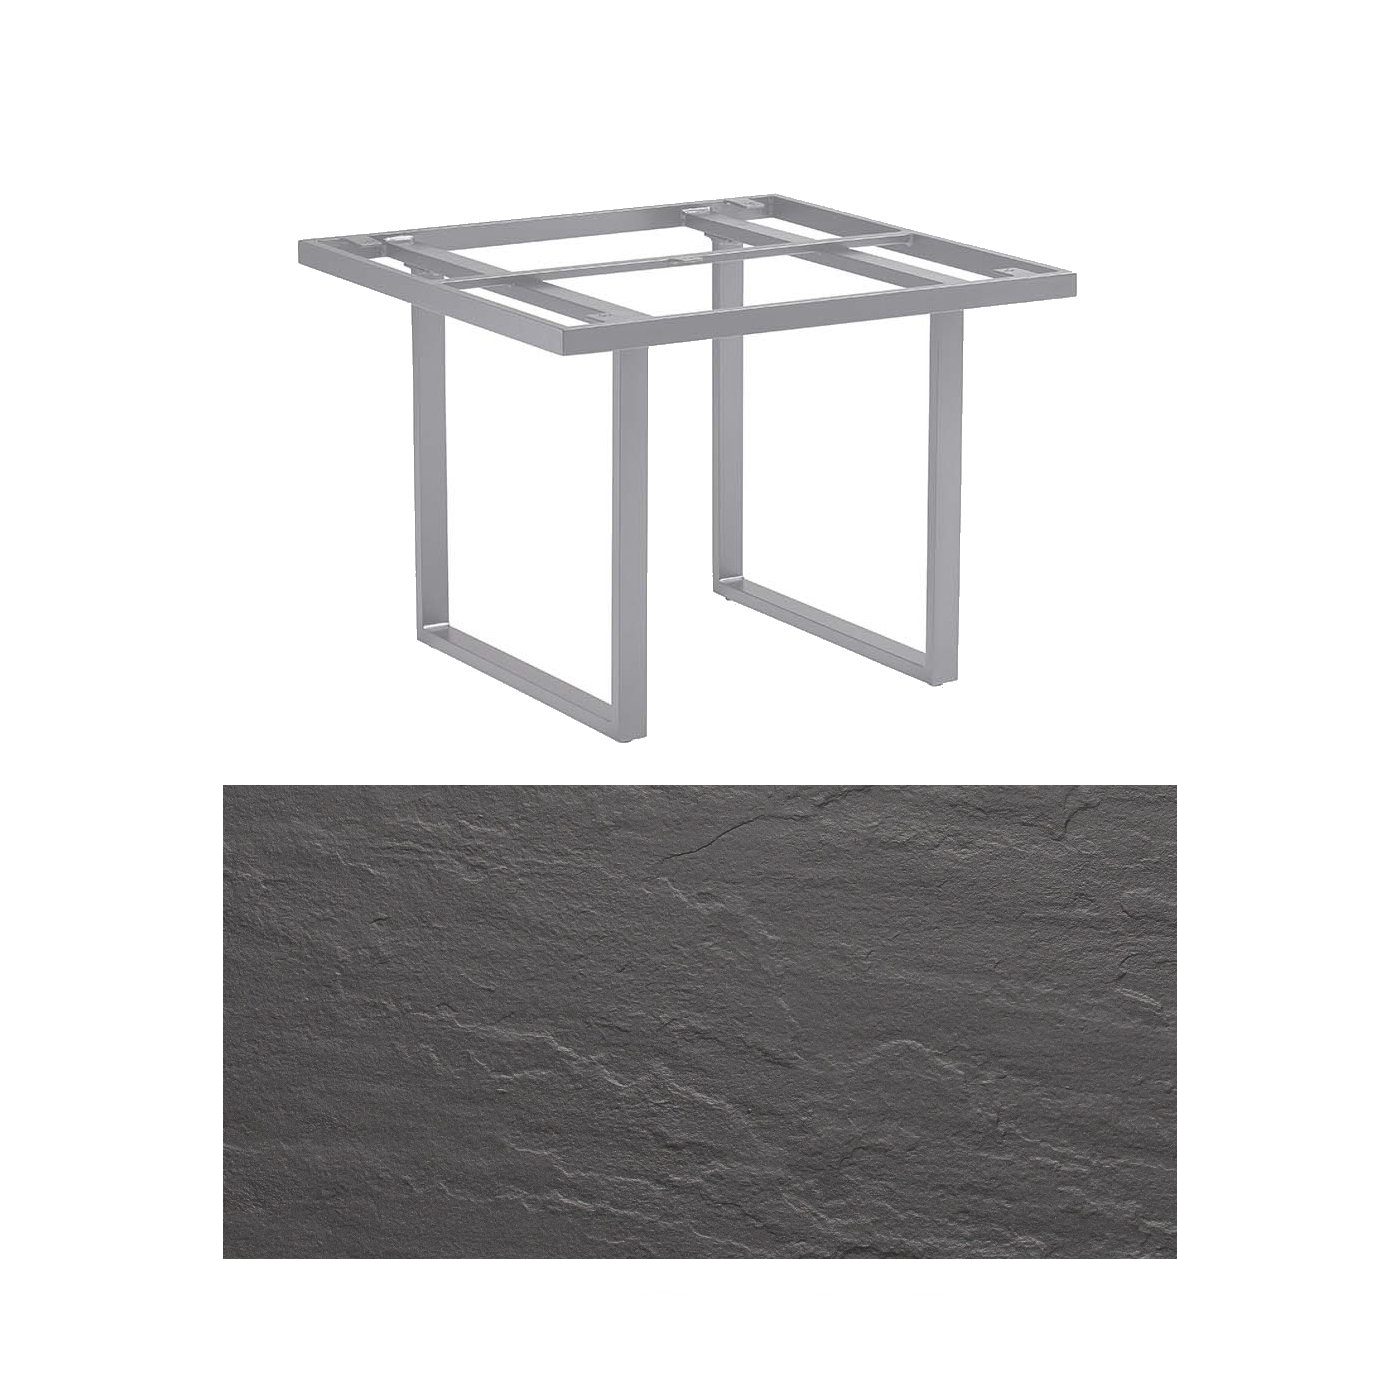 Kettler "Skate" Gartentisch Casual Dining, Gestell Aluminium silber, Tischplatte Kettalux-Plus anthrazit (Schieferoptik), 95x95 cm, Höhe ca. 68 cm